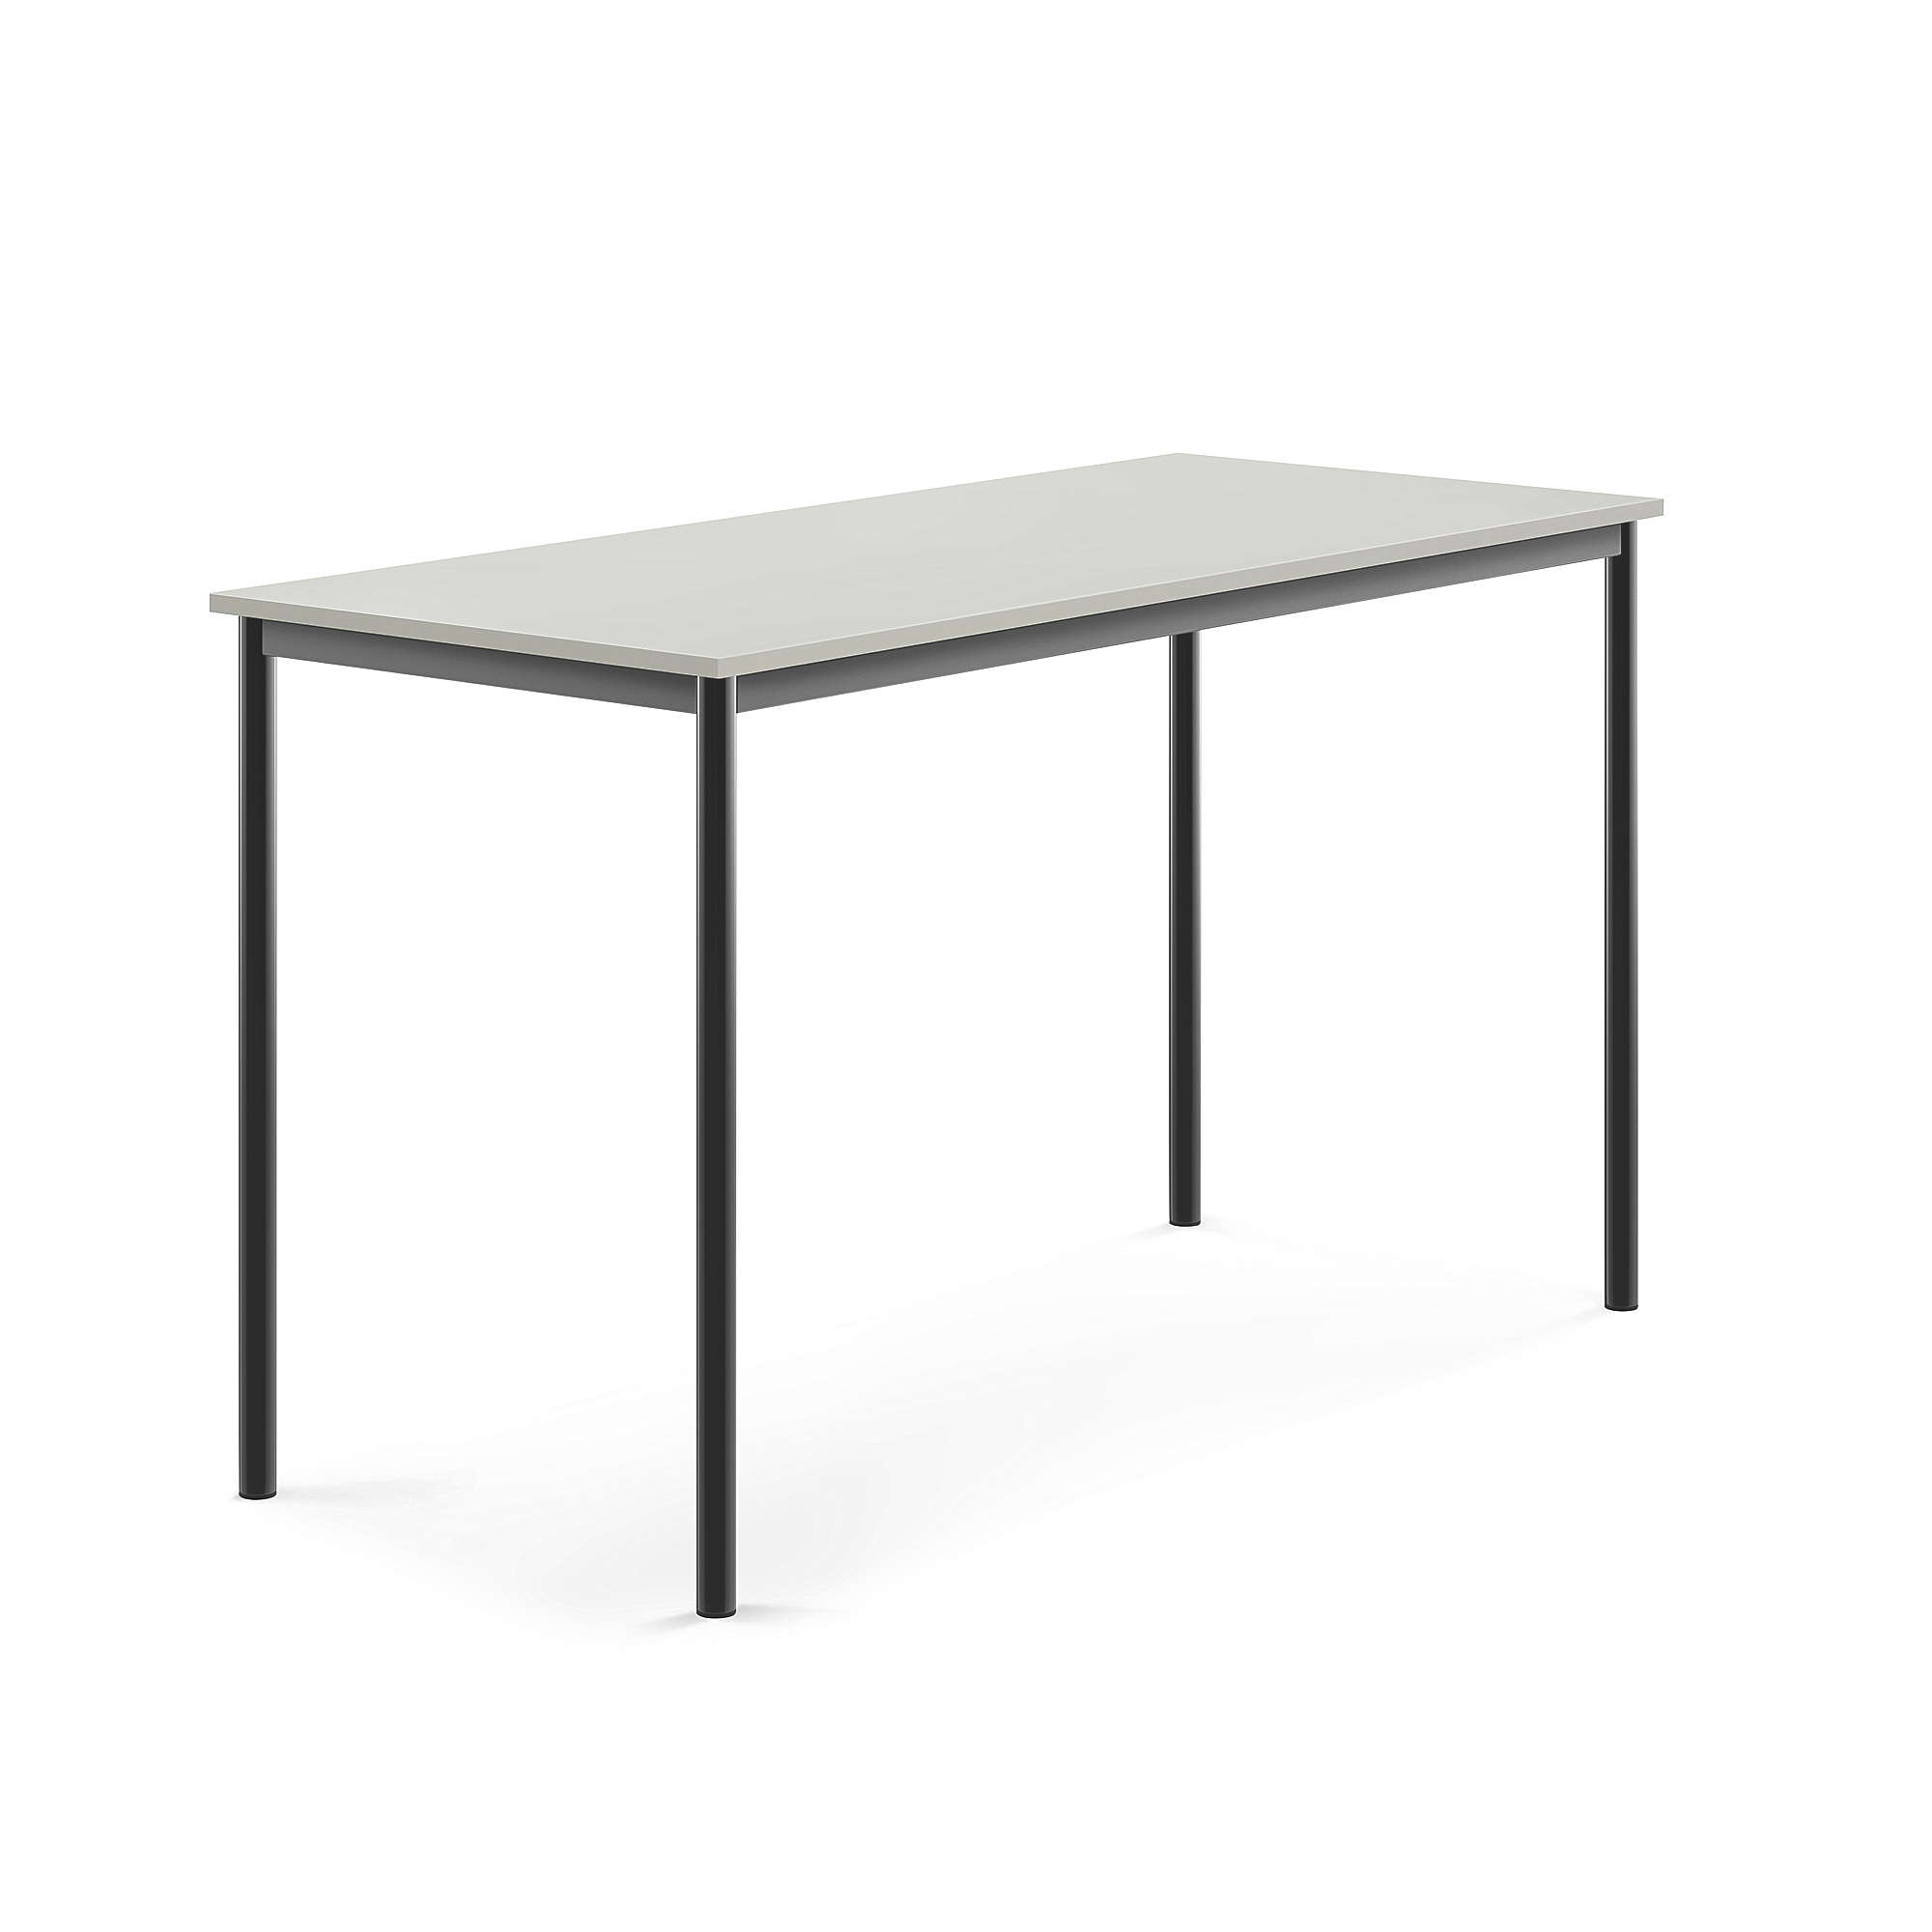 Stůl BORÅS, 1600x700x900 mm, antracitově šedé nohy, HPL deska, šedá